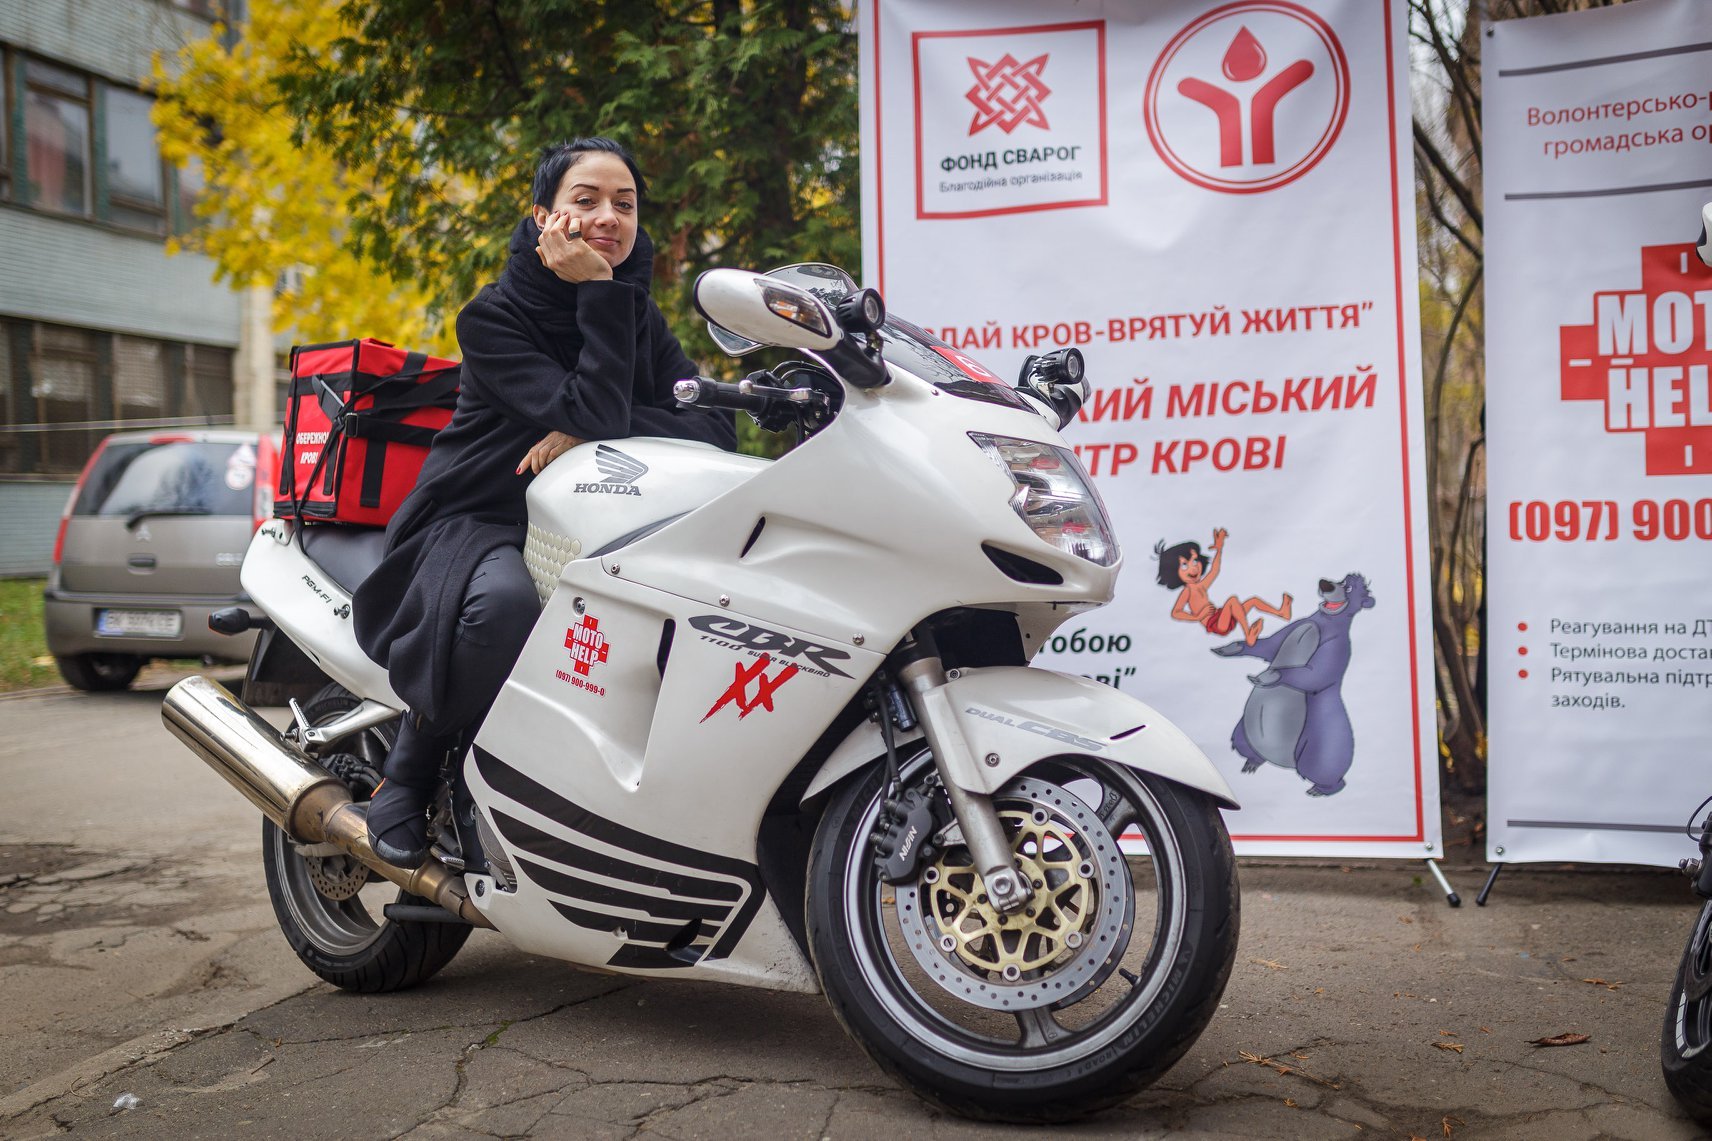 С начала года волонтеры “Мотохелп” осуществили более 100 срочных доставок крови по Киеву и области